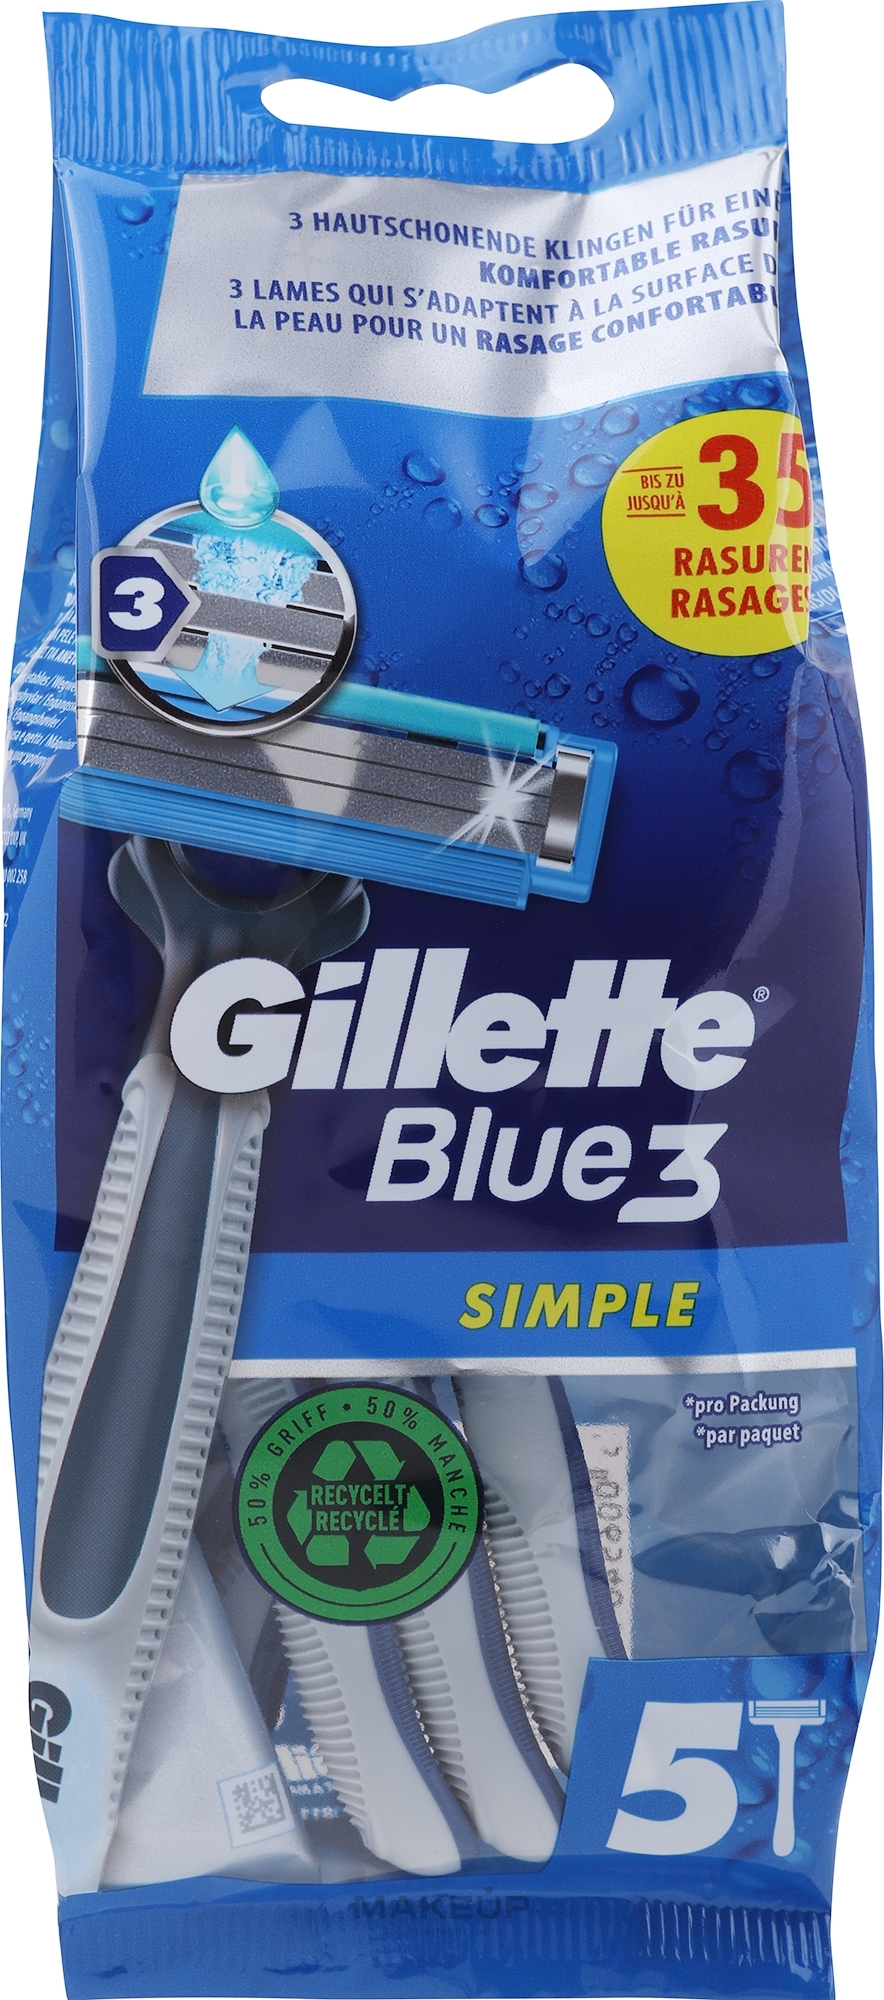 Einwegrasierer-Set - Gillette Blue3 Simple Disposable Razors 4+1  — Bild 5 St.